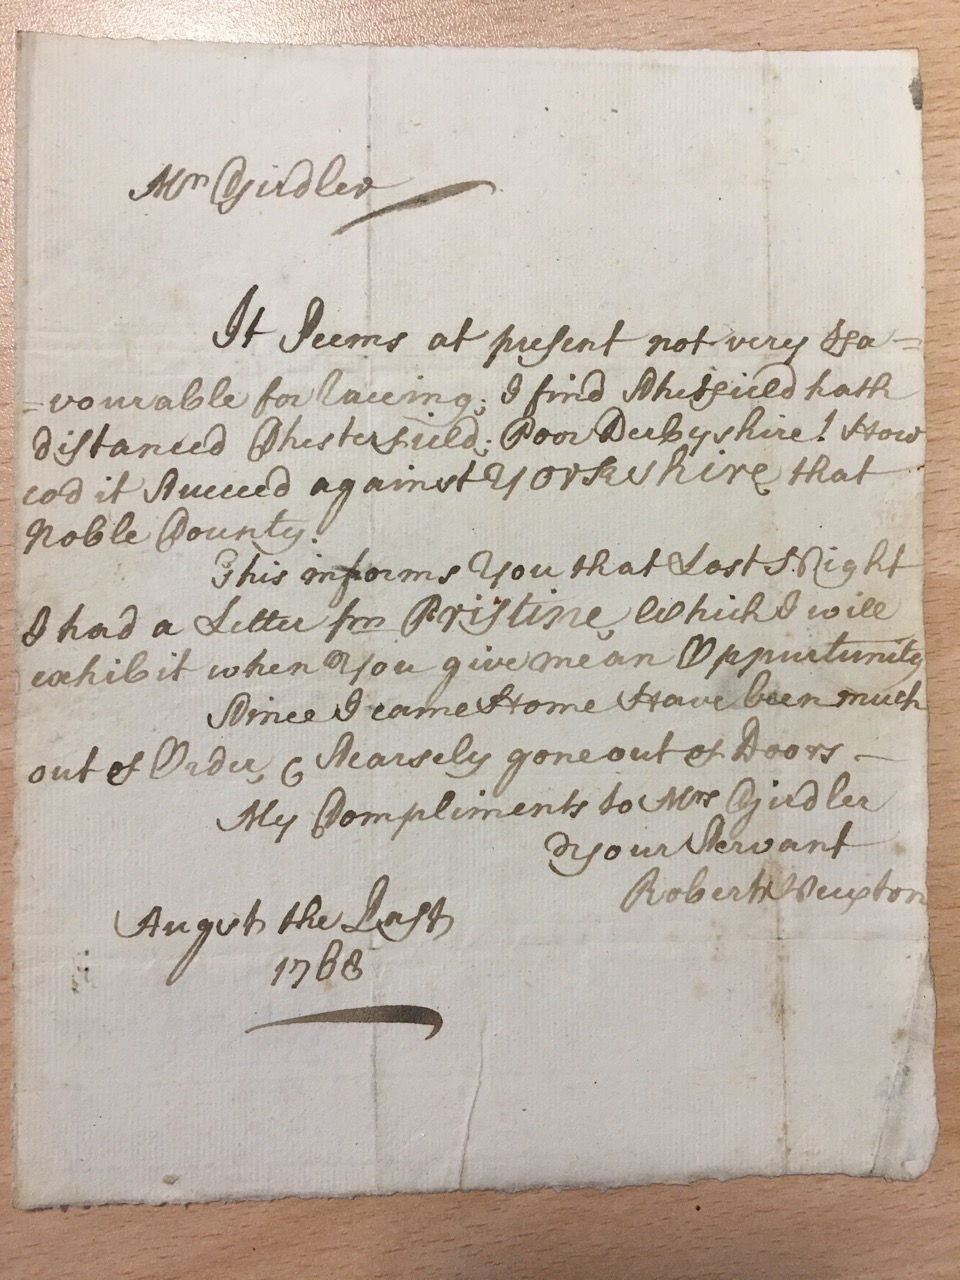 Image #1 of letter: Robert Newton to John Girdler, 31 August 1768